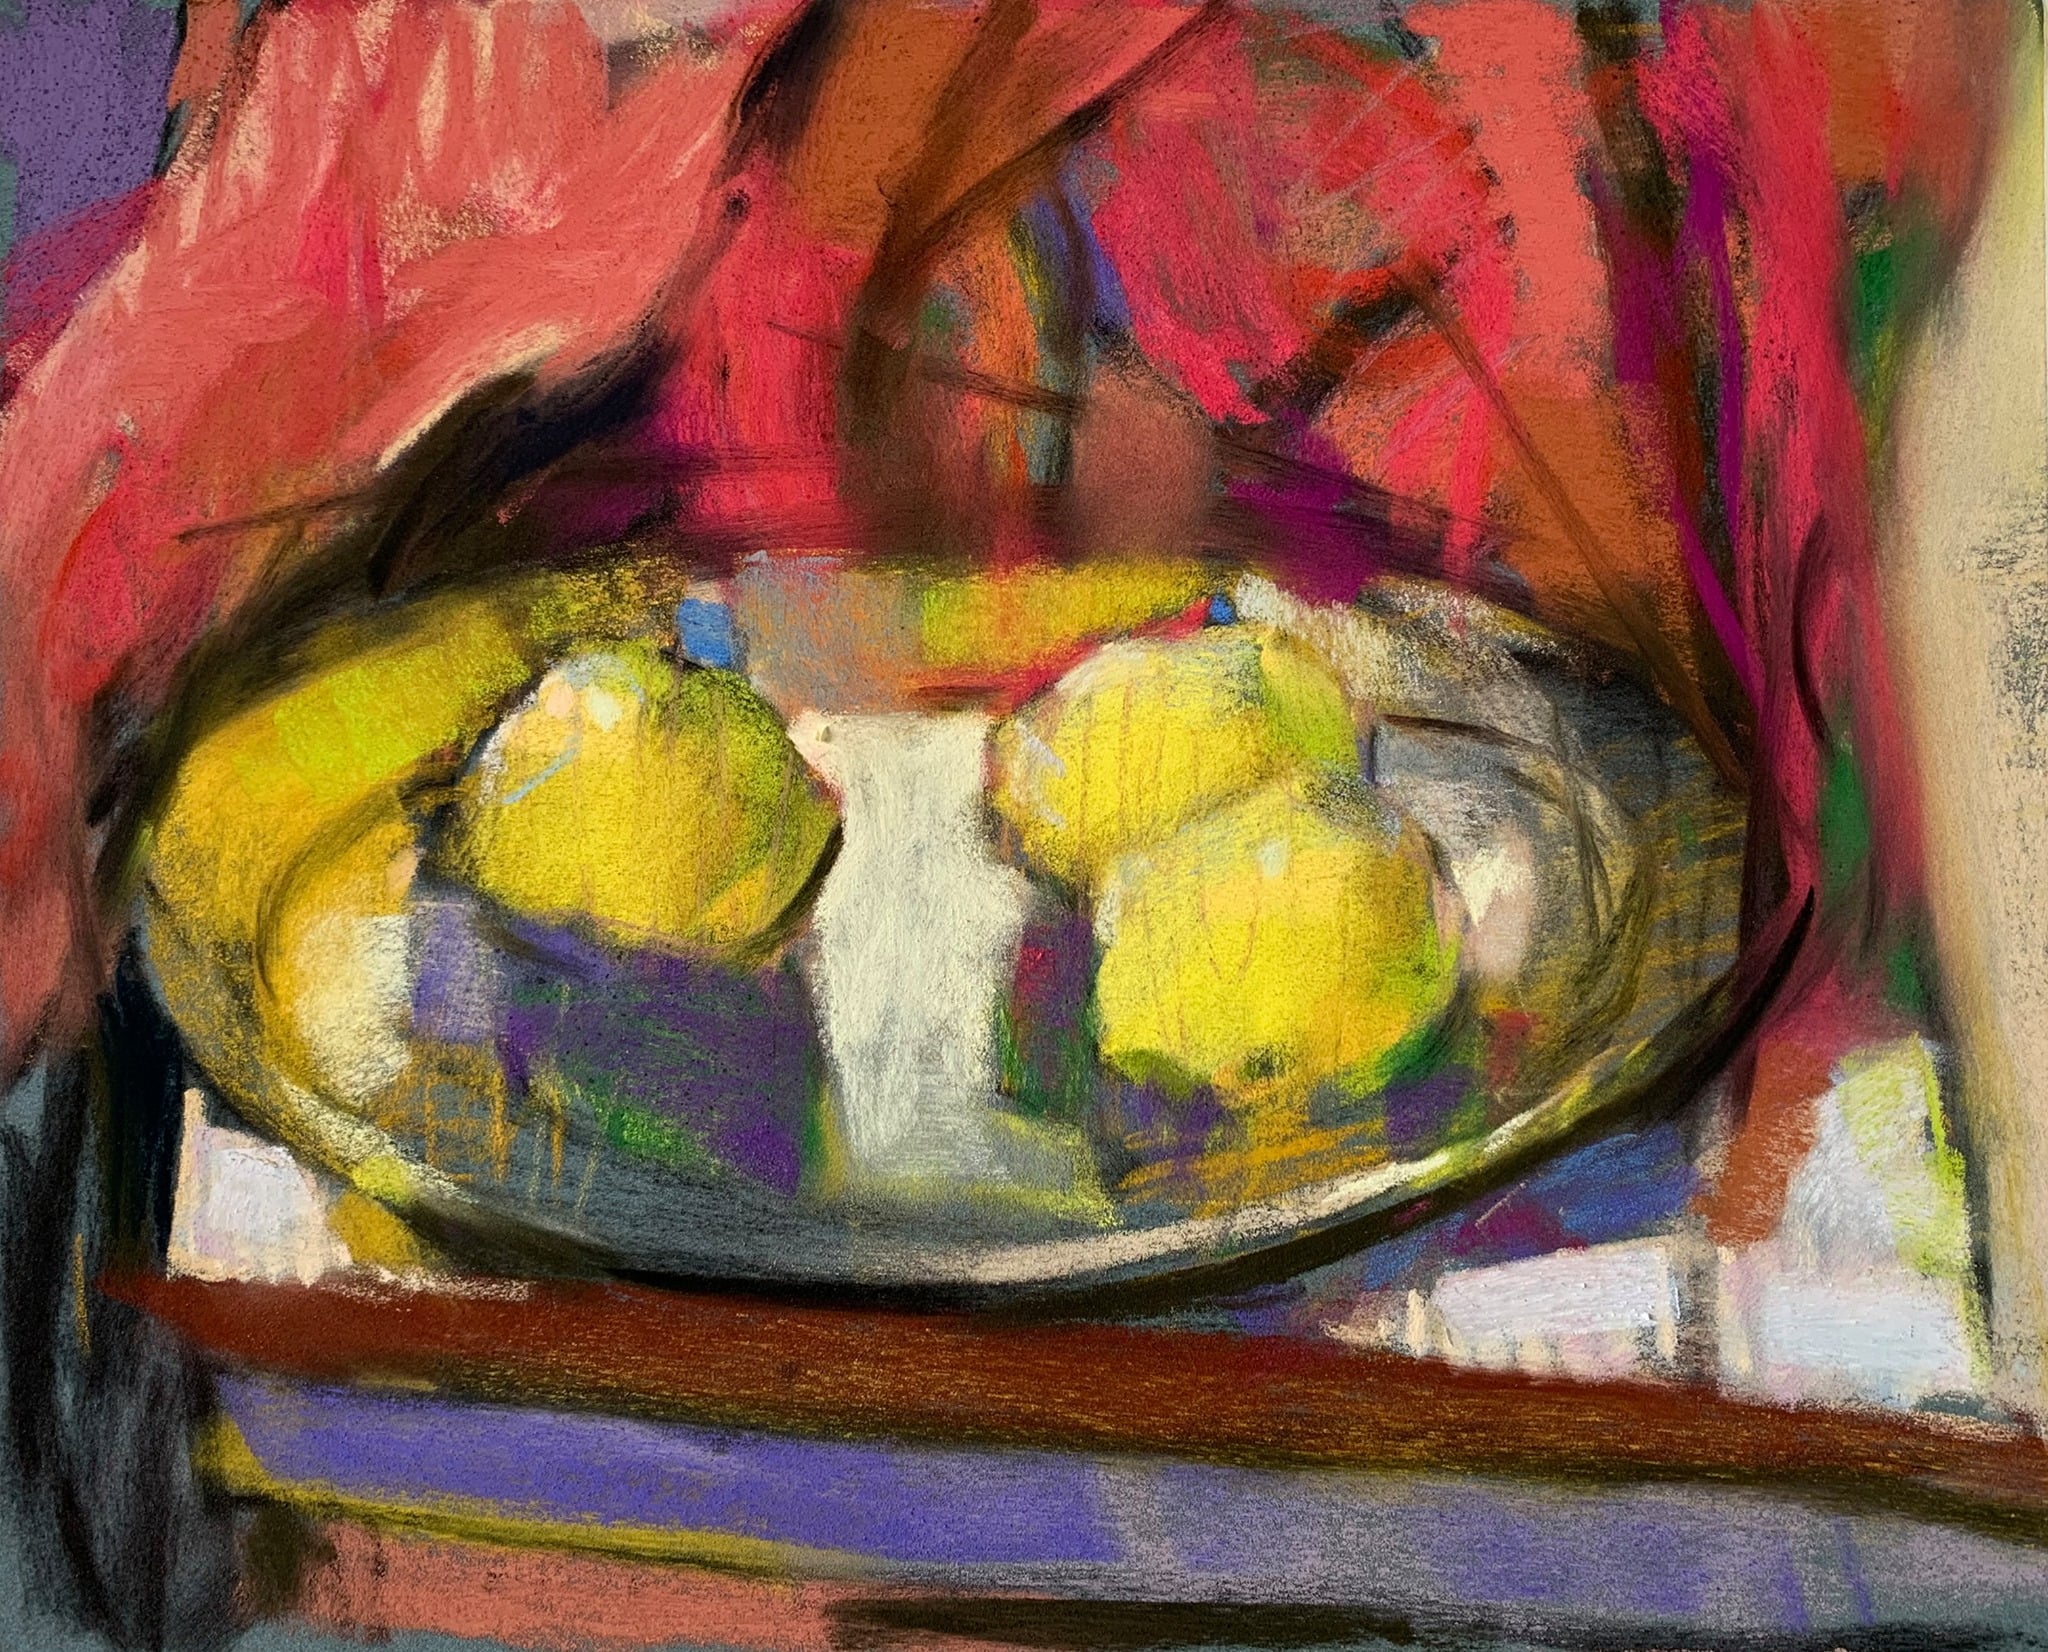 Matisse's influence: Casey Klahn, "Lemons on a Platter," 2021, pastel on paper